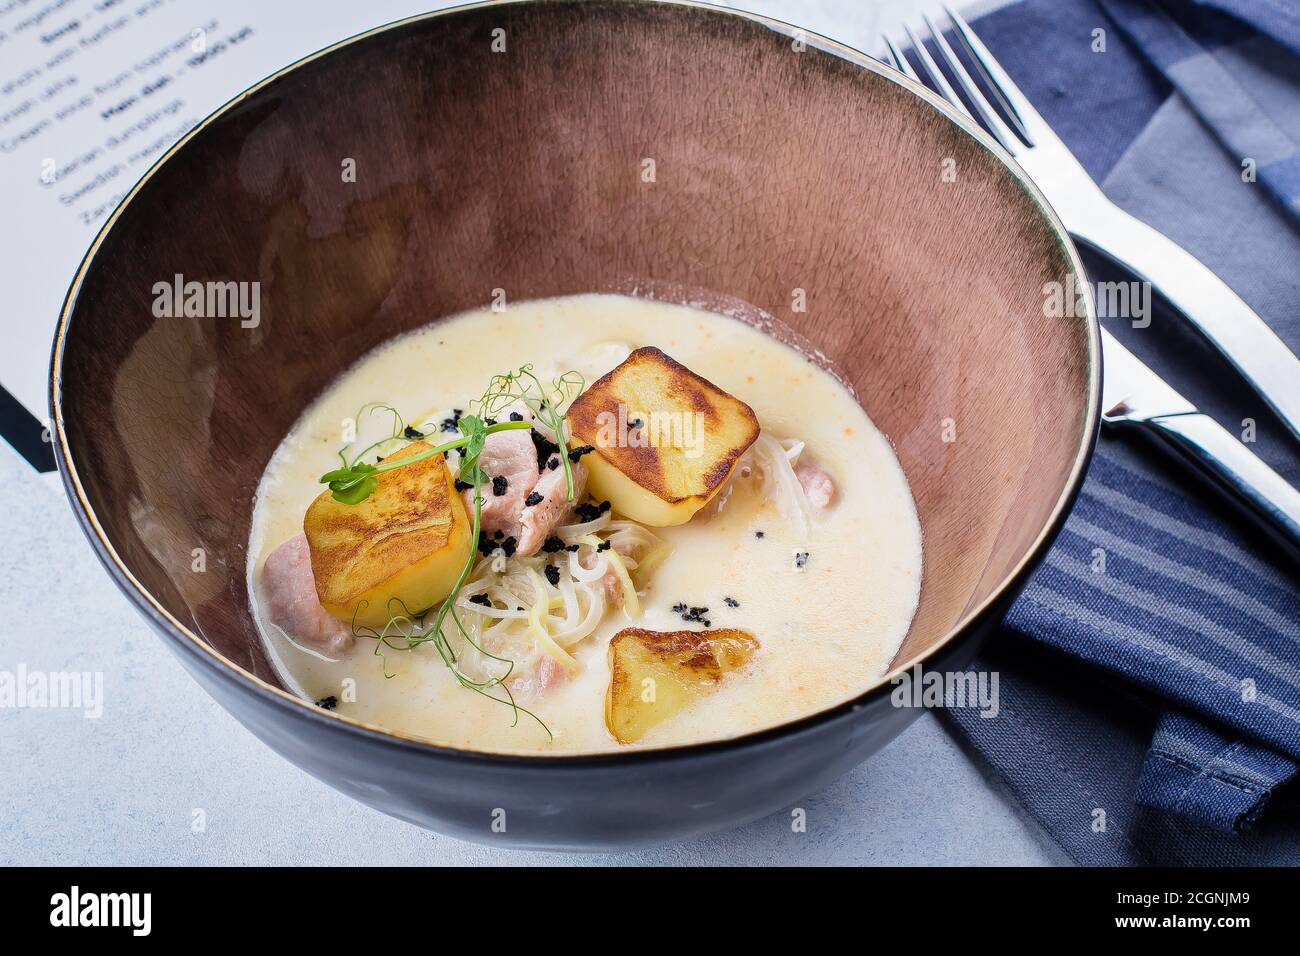 Purée de champignons délicieuse dans un bol sur la table. Cuisine scandinave. Gros plan. Banque D'Images